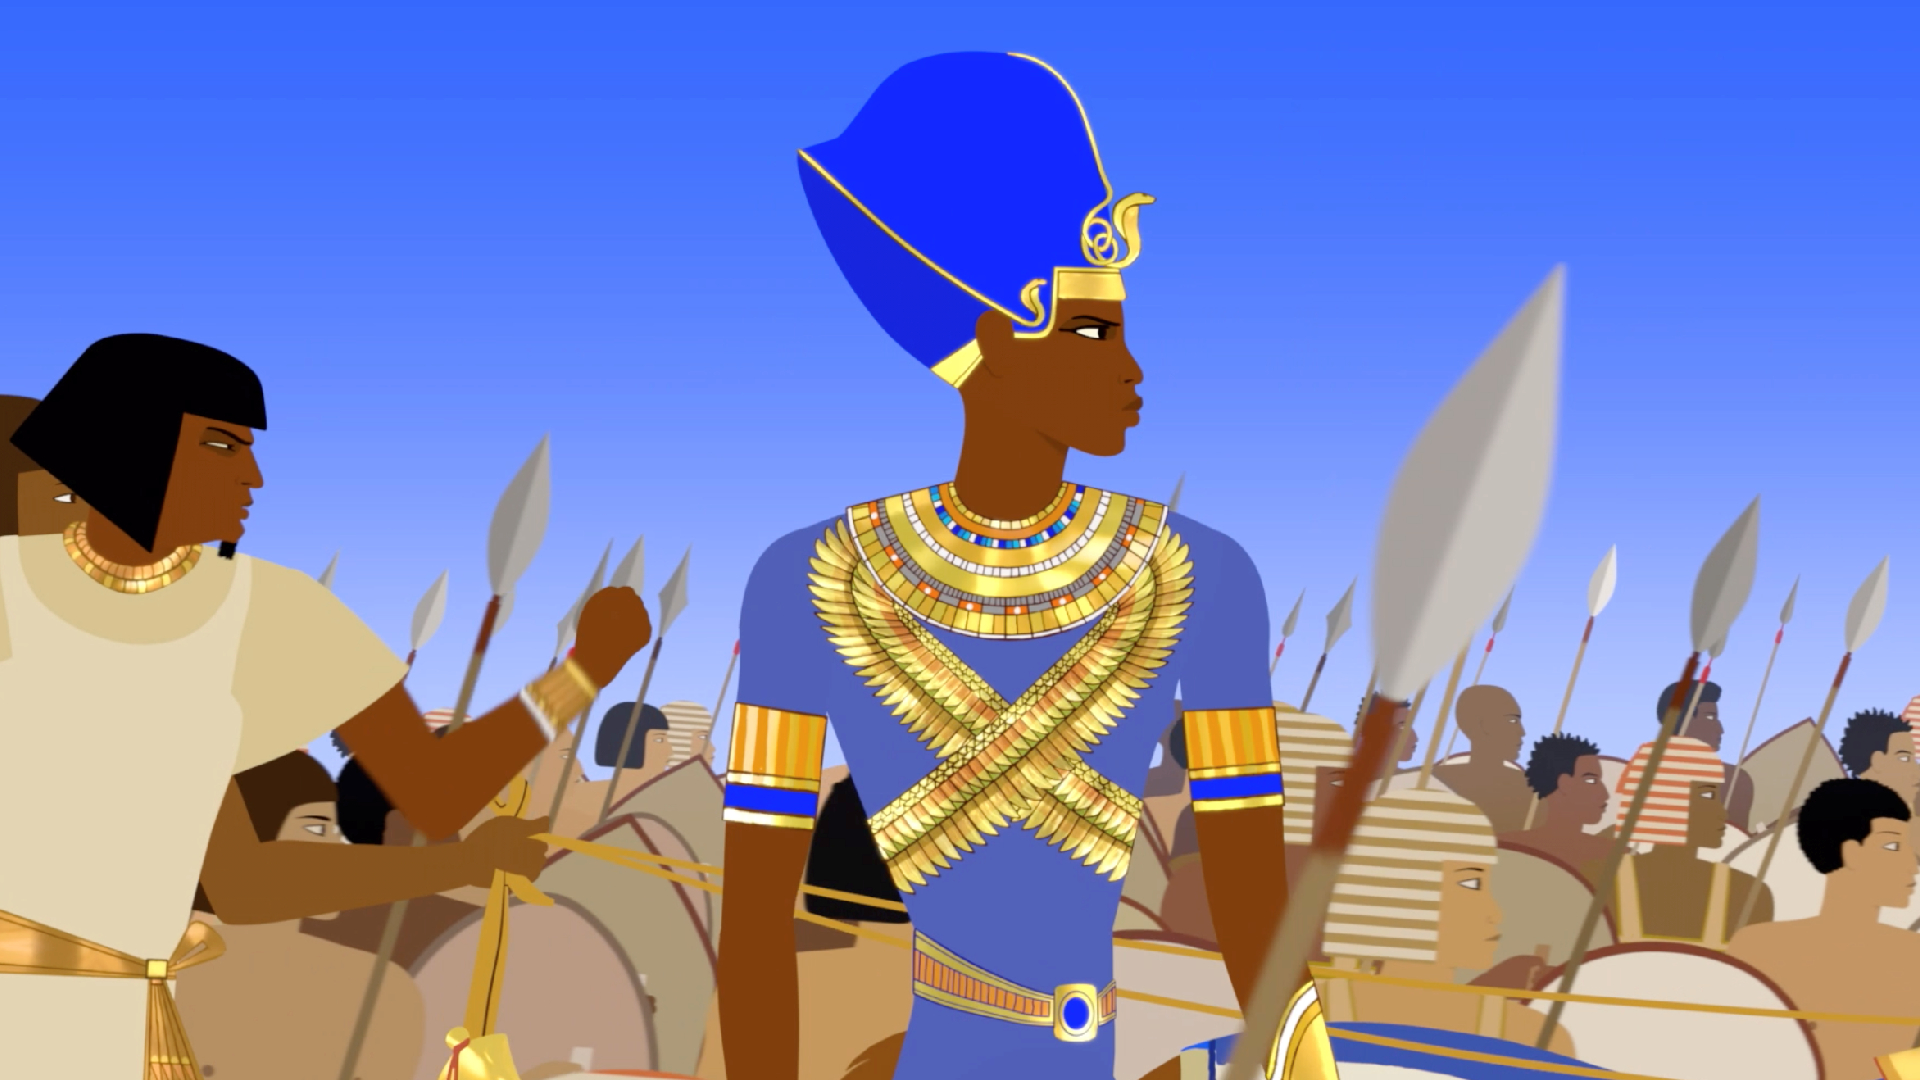 immagine del faraone ma senza selvaggio e principessa - nerdface